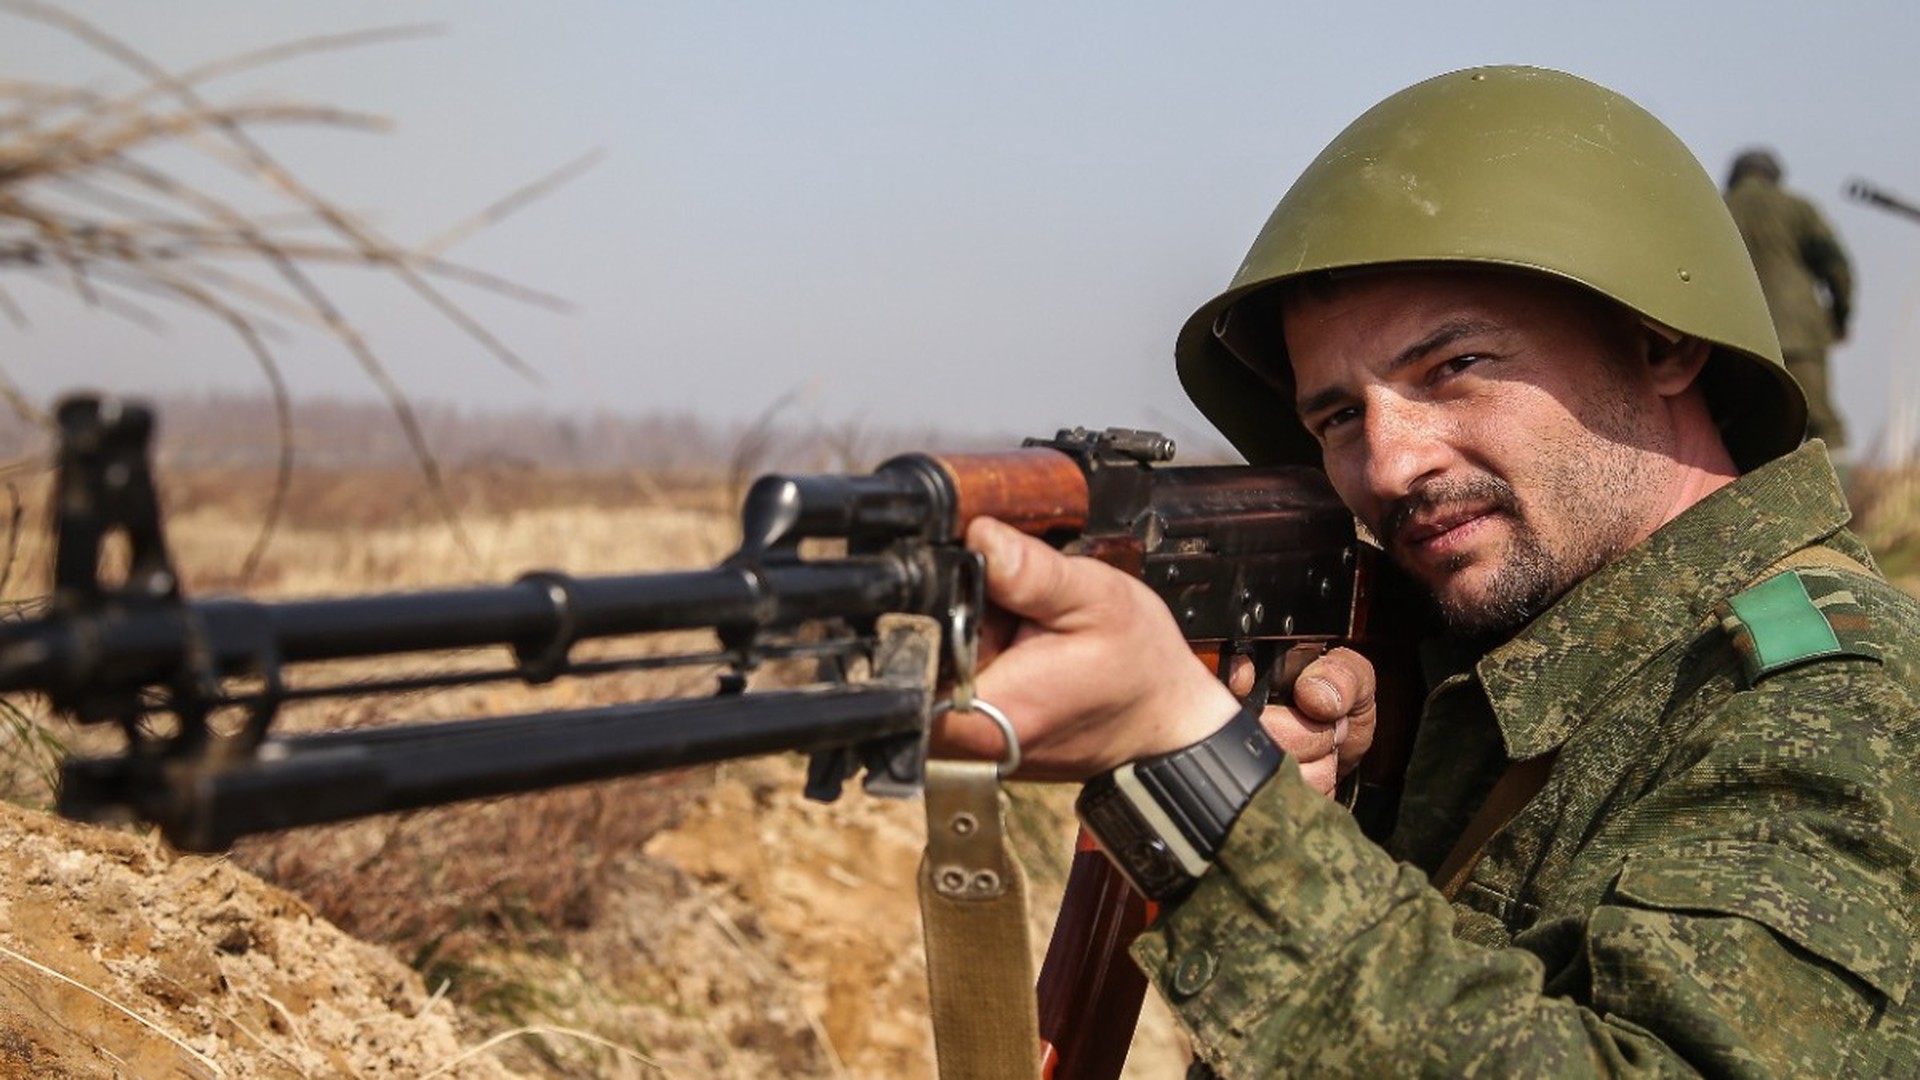 Шуневич сообщил, что в Белоруссии начнут готовить снайперов из охотников и рыбаков